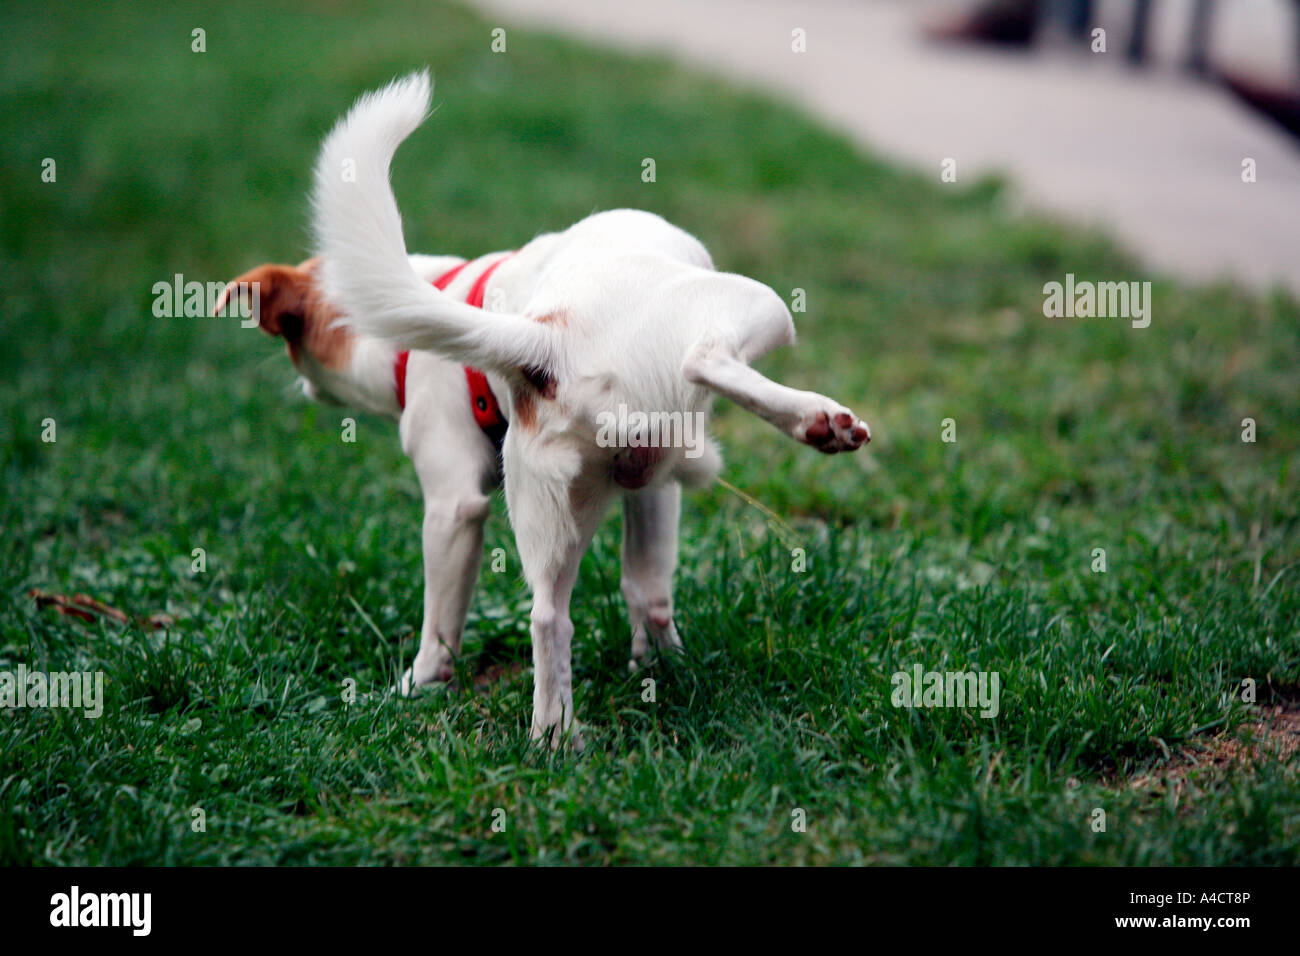 Hund Bein anheben Stockfotografie - Alamy